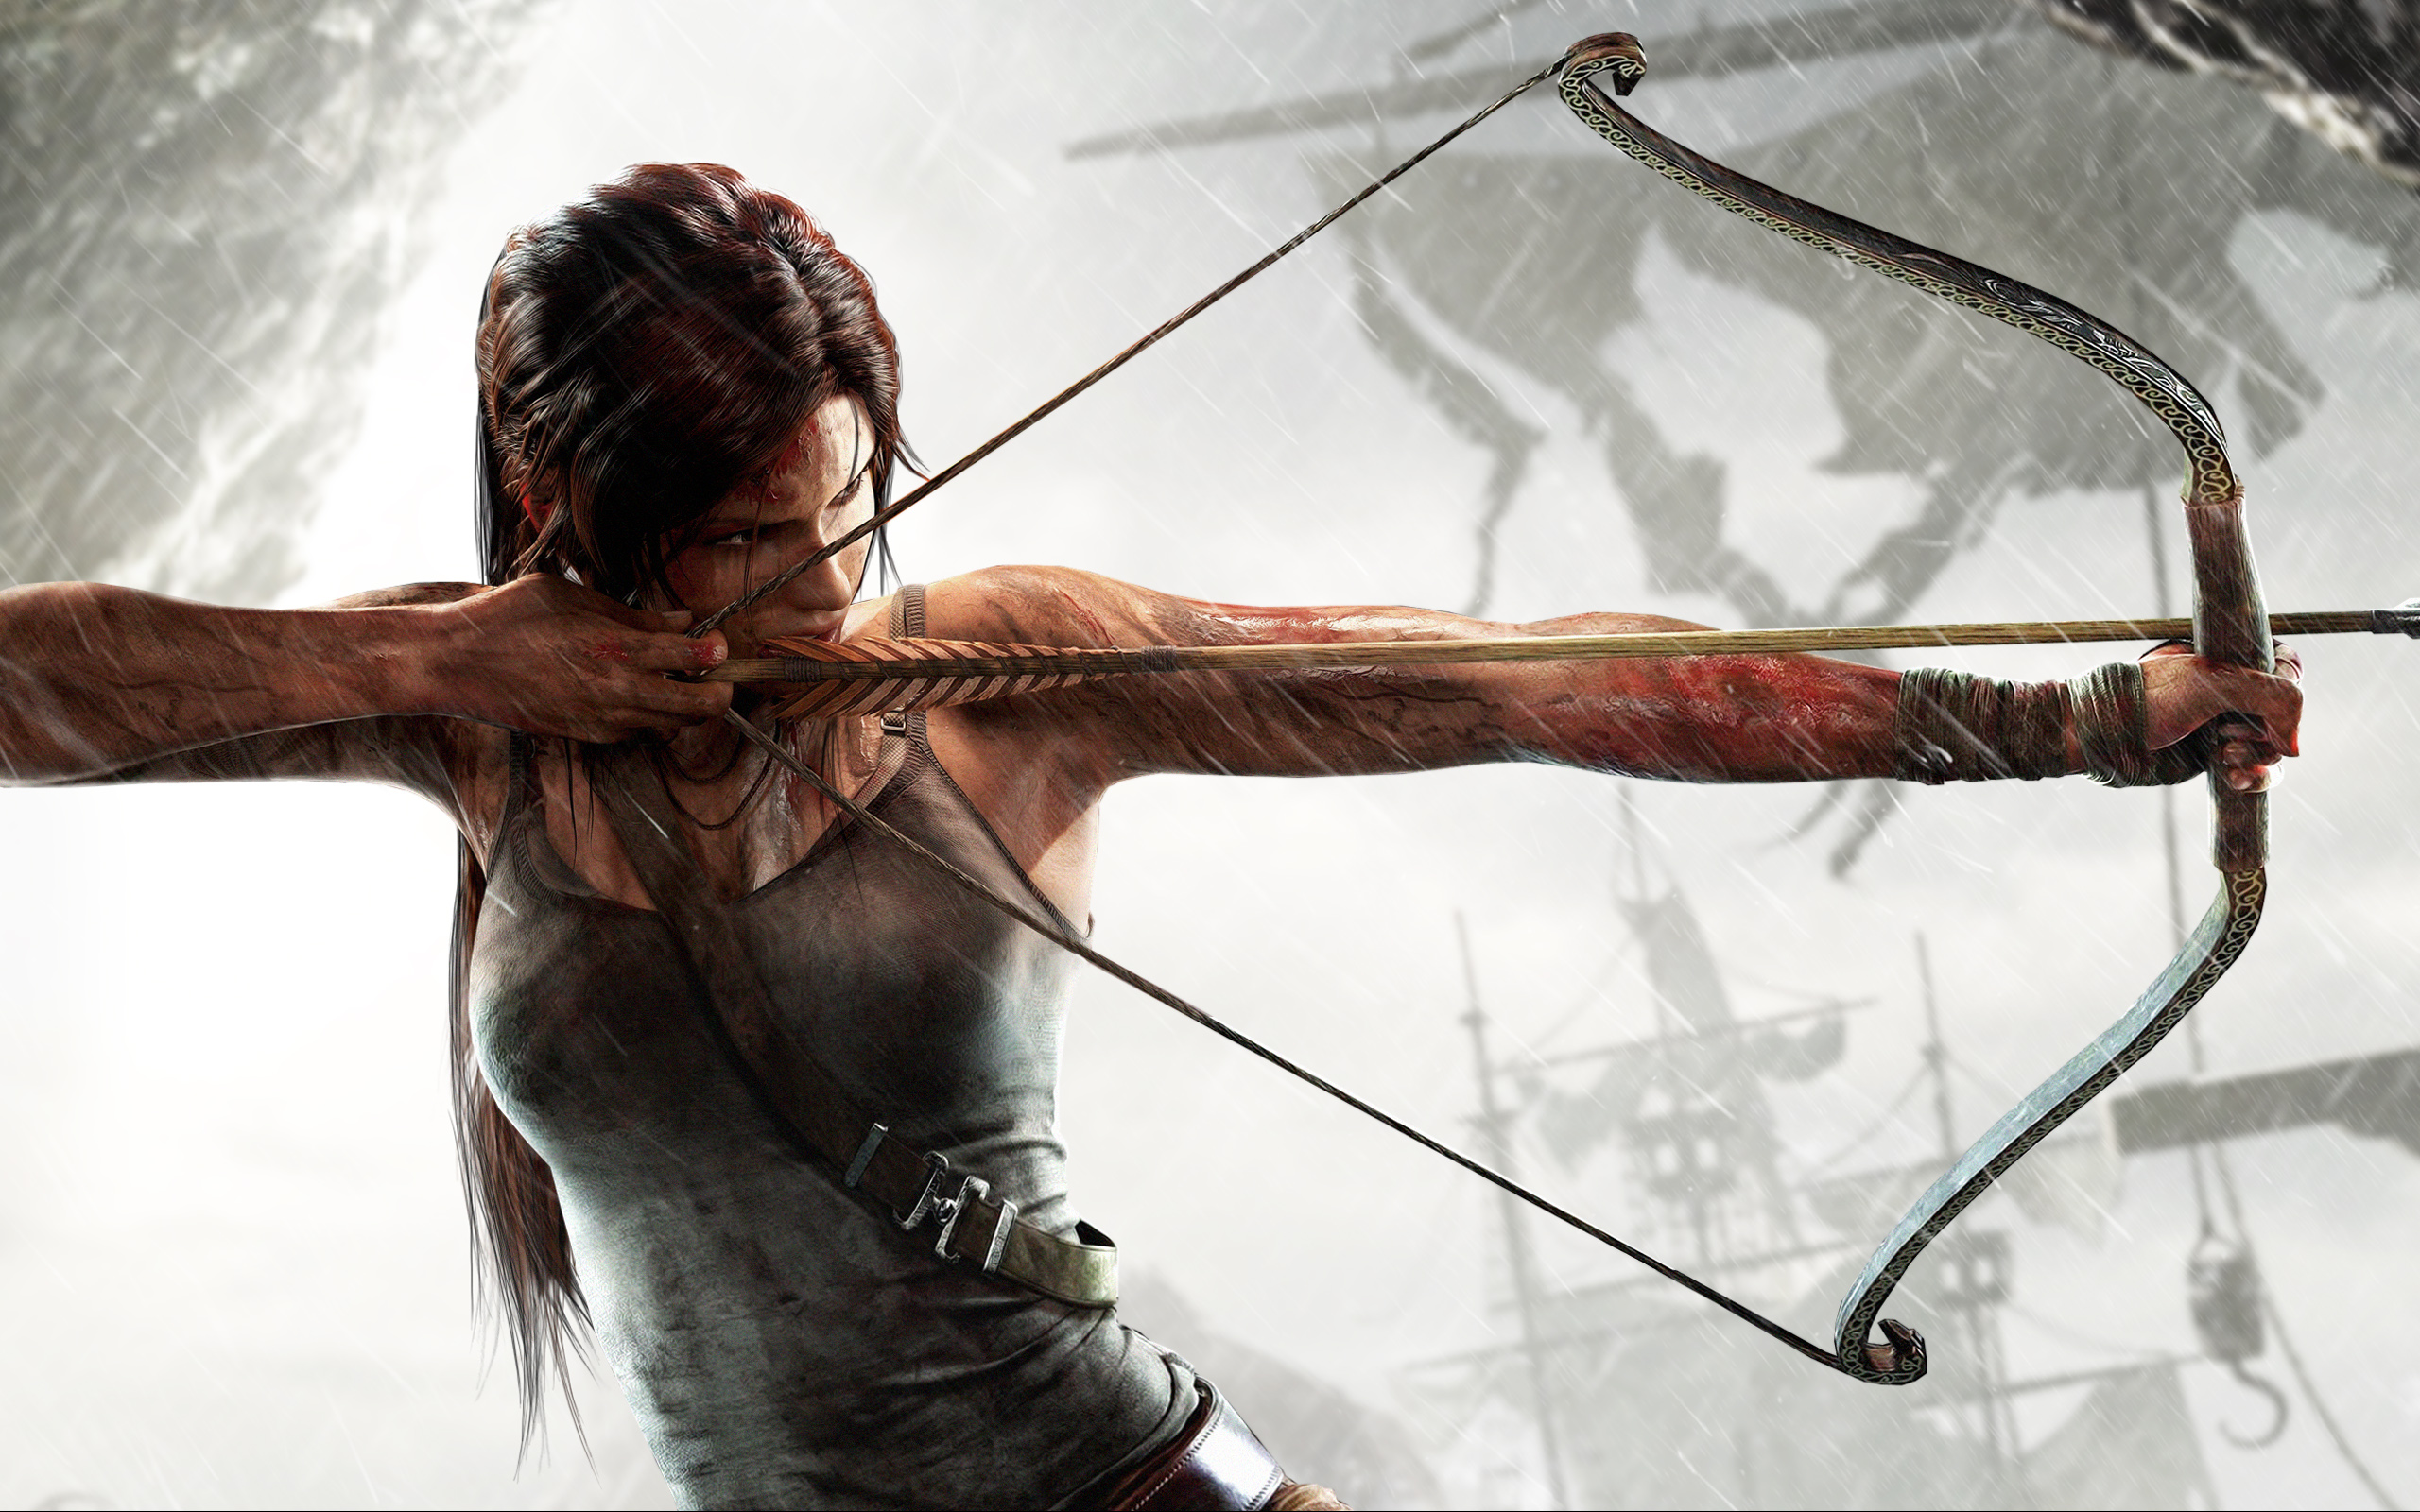 46+] Tomb Raider HD Wallpaper - WallpaperSafari